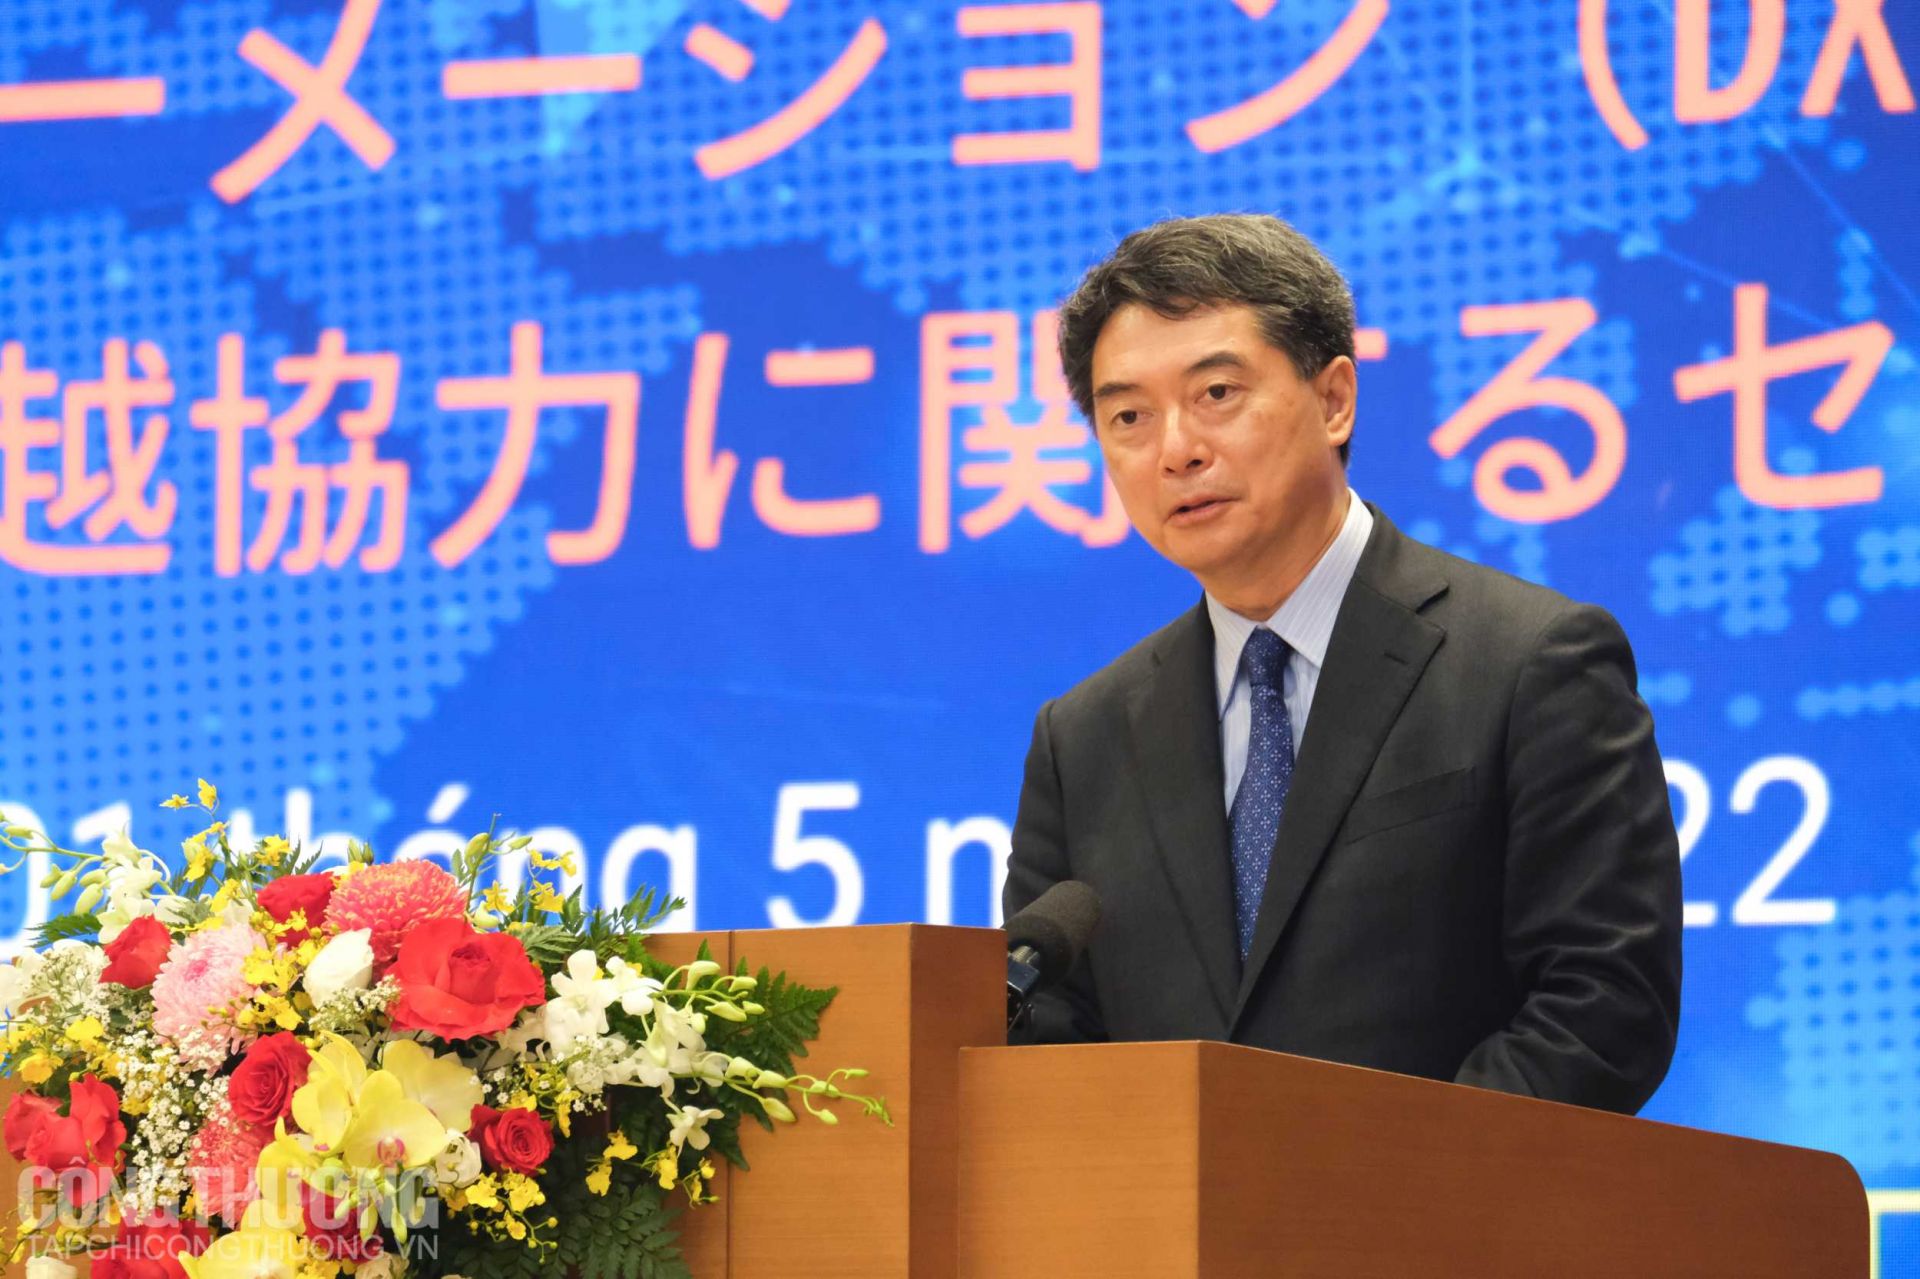 Thứ trưởng Bộ Kinh tế, Công nghiệp và Thương mại Nhật Bản Hirose Naoshi